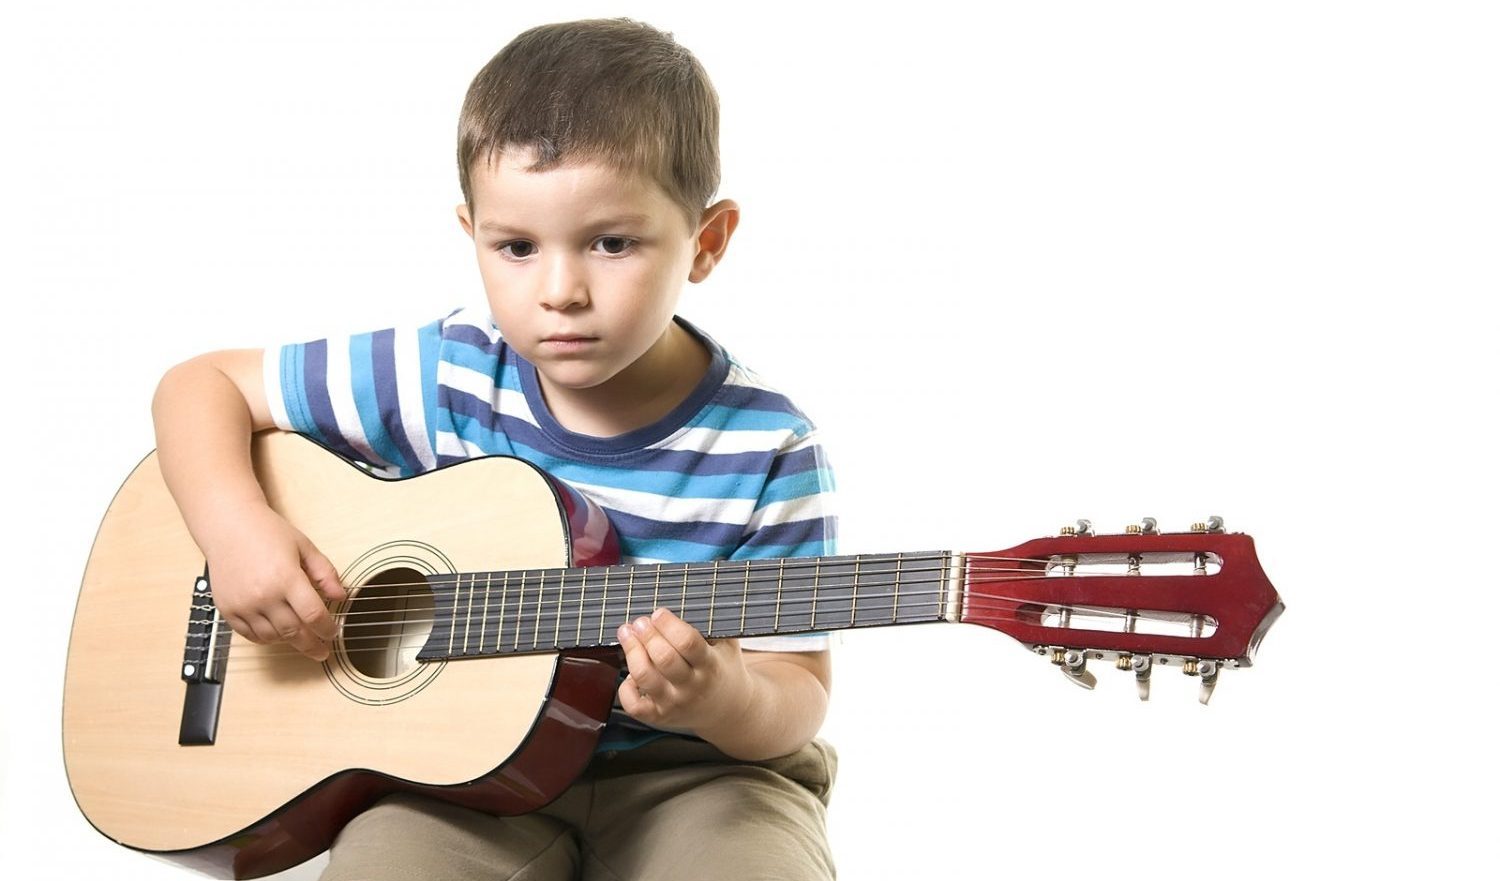 nên mua loại đàn guitar nào cho bé 7 tuổi là phù hợp nhất